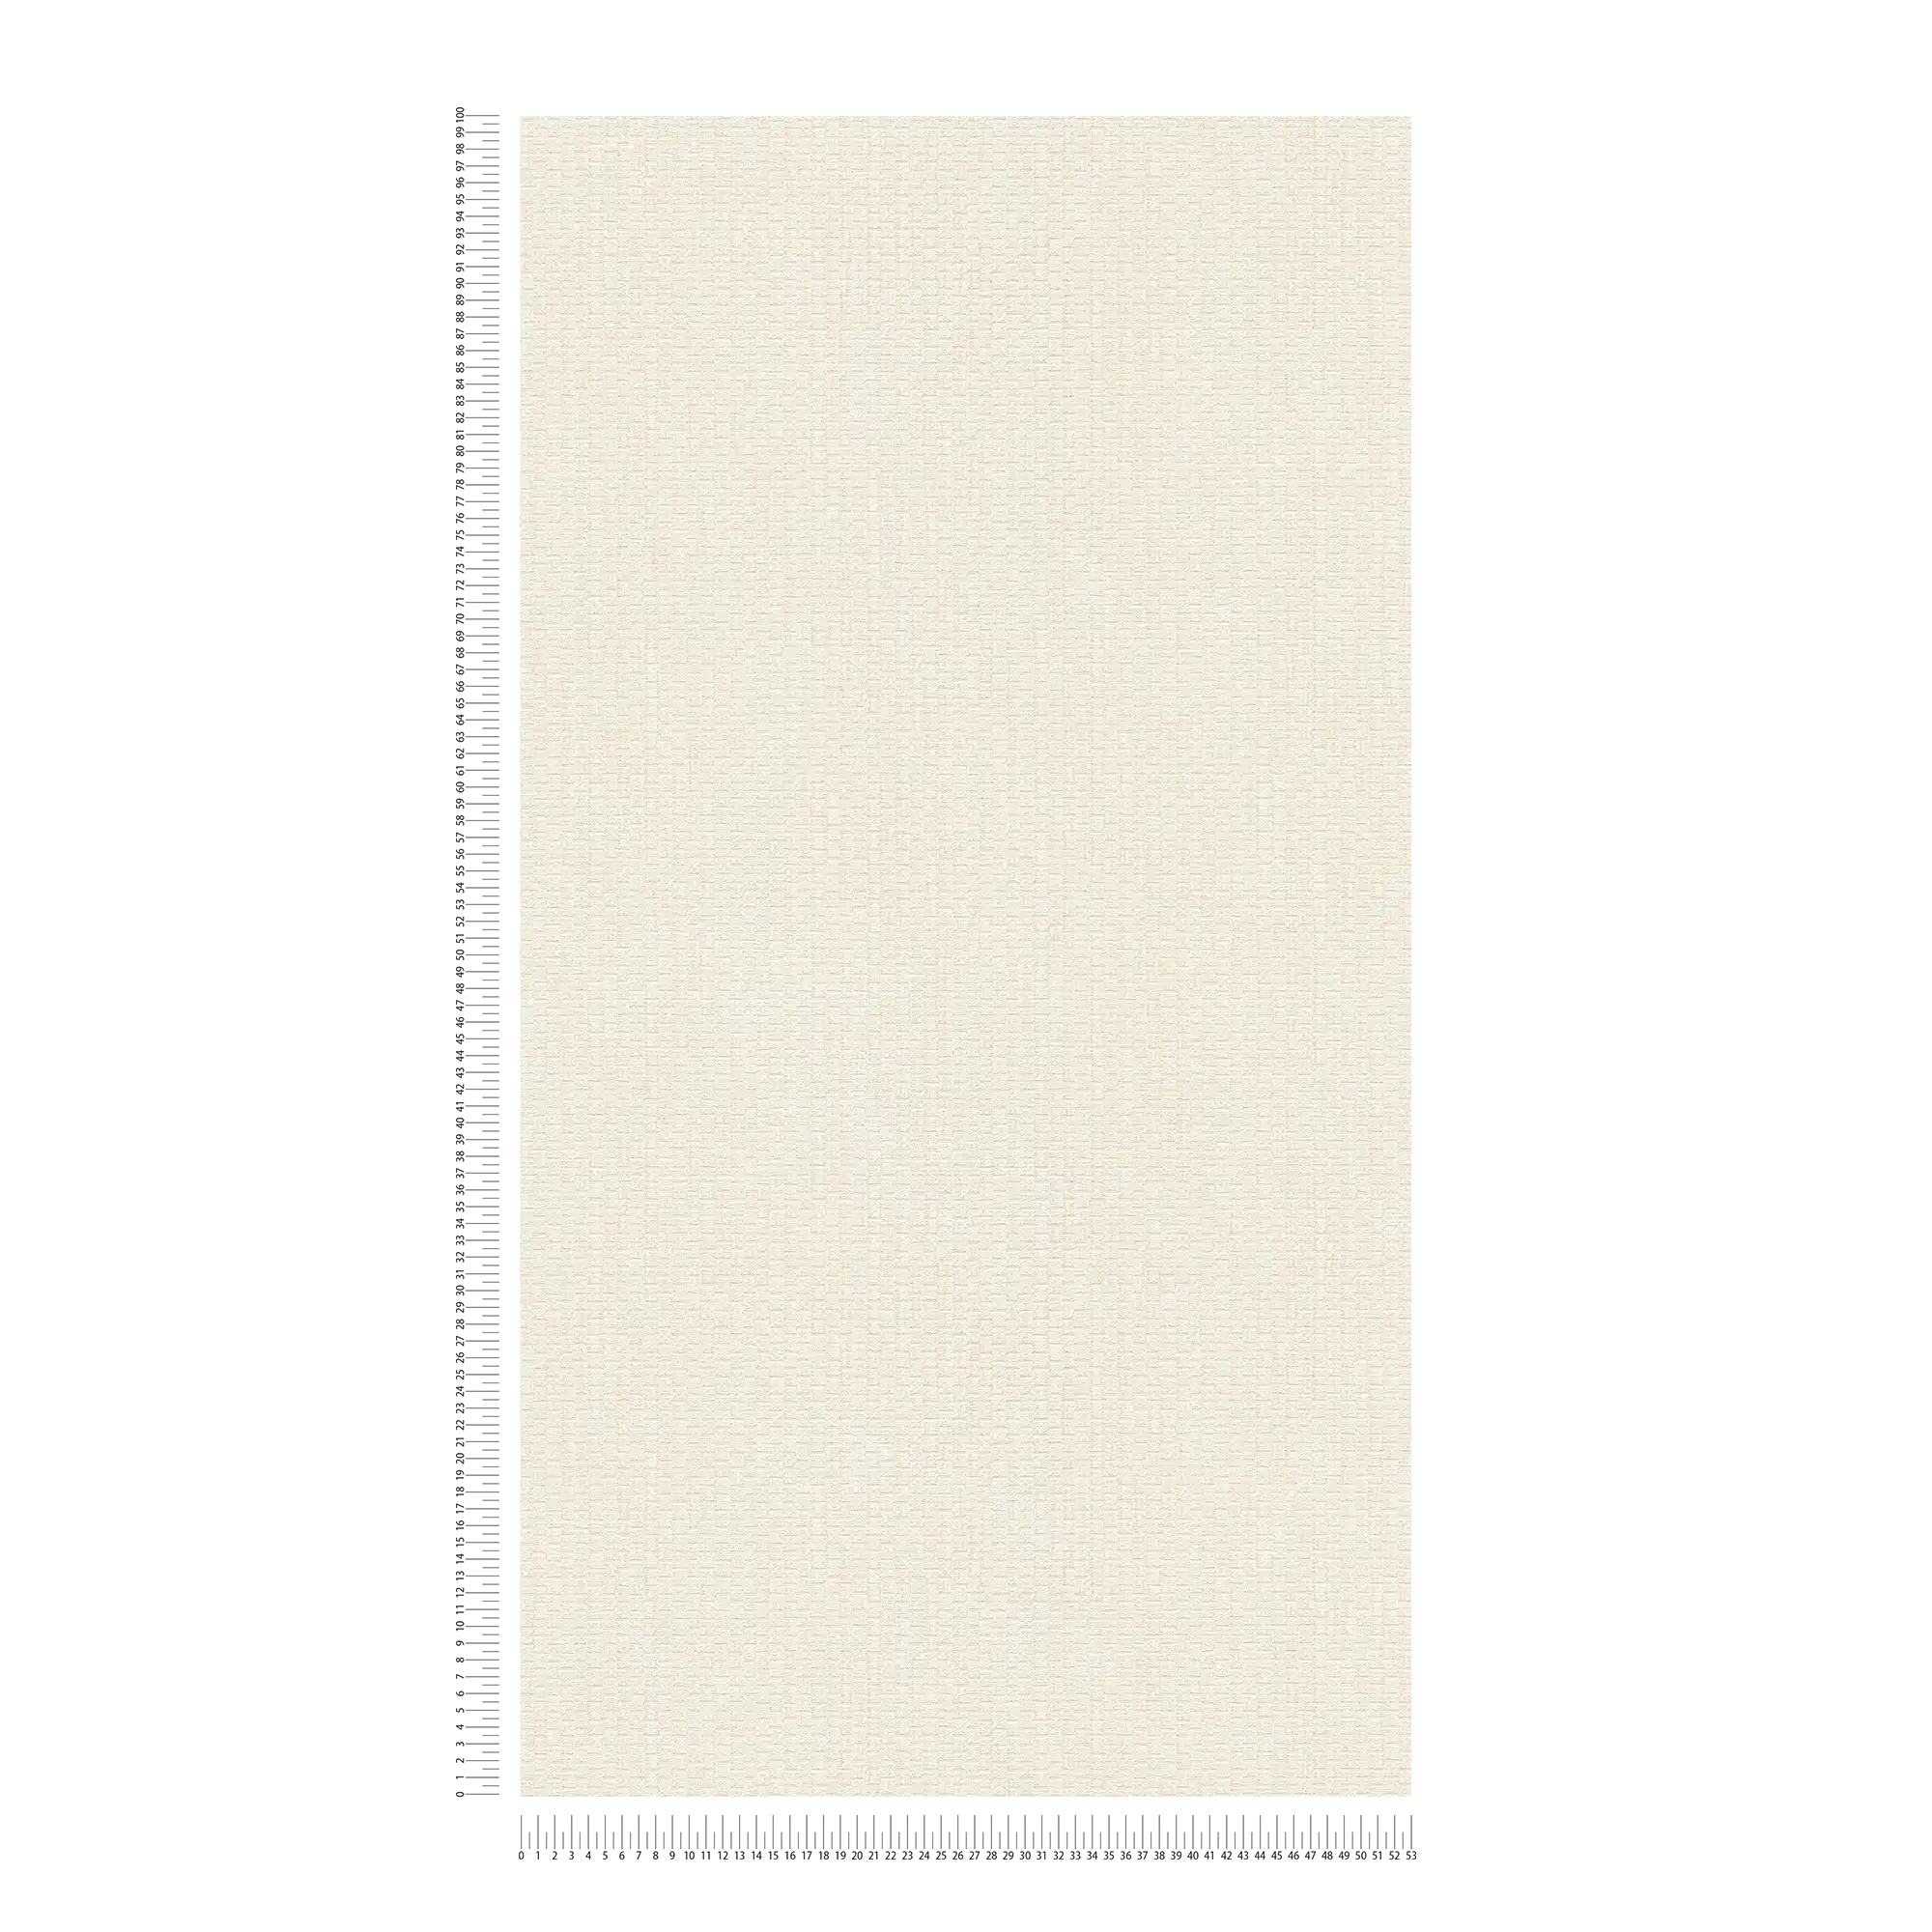             Papel pintado con diseño de alfombra de rafia - crema, blanco
        